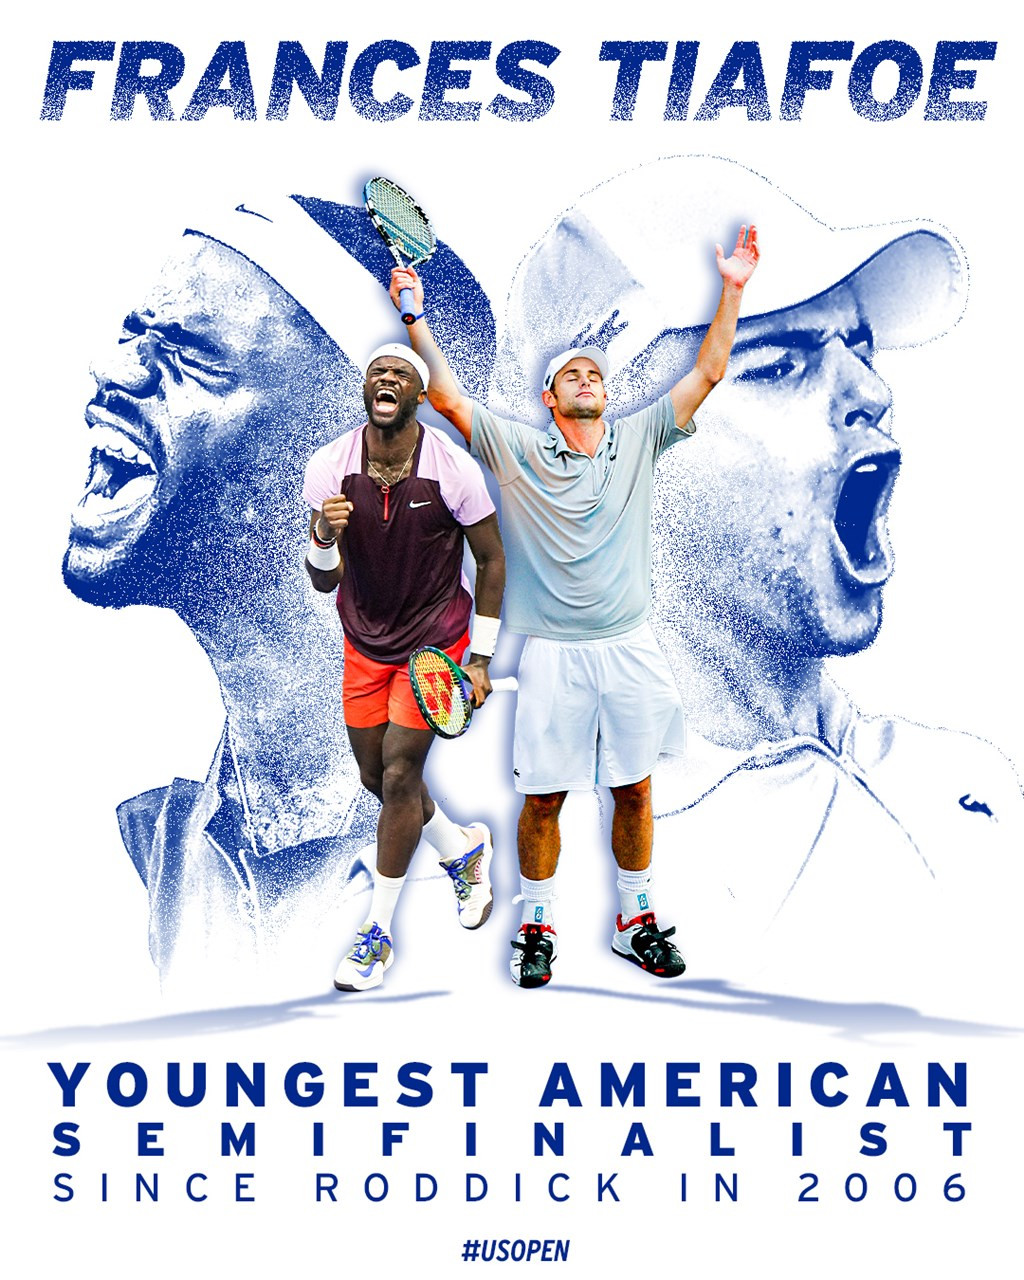 Chiến thắng này giúp Tiafoe trở thành nam tay vợt người Mỹ đầu tiên lọt vào bán kết US Open sau 16 năm. Trước đó, Andy Roddick làm được điều này vào năm 2006